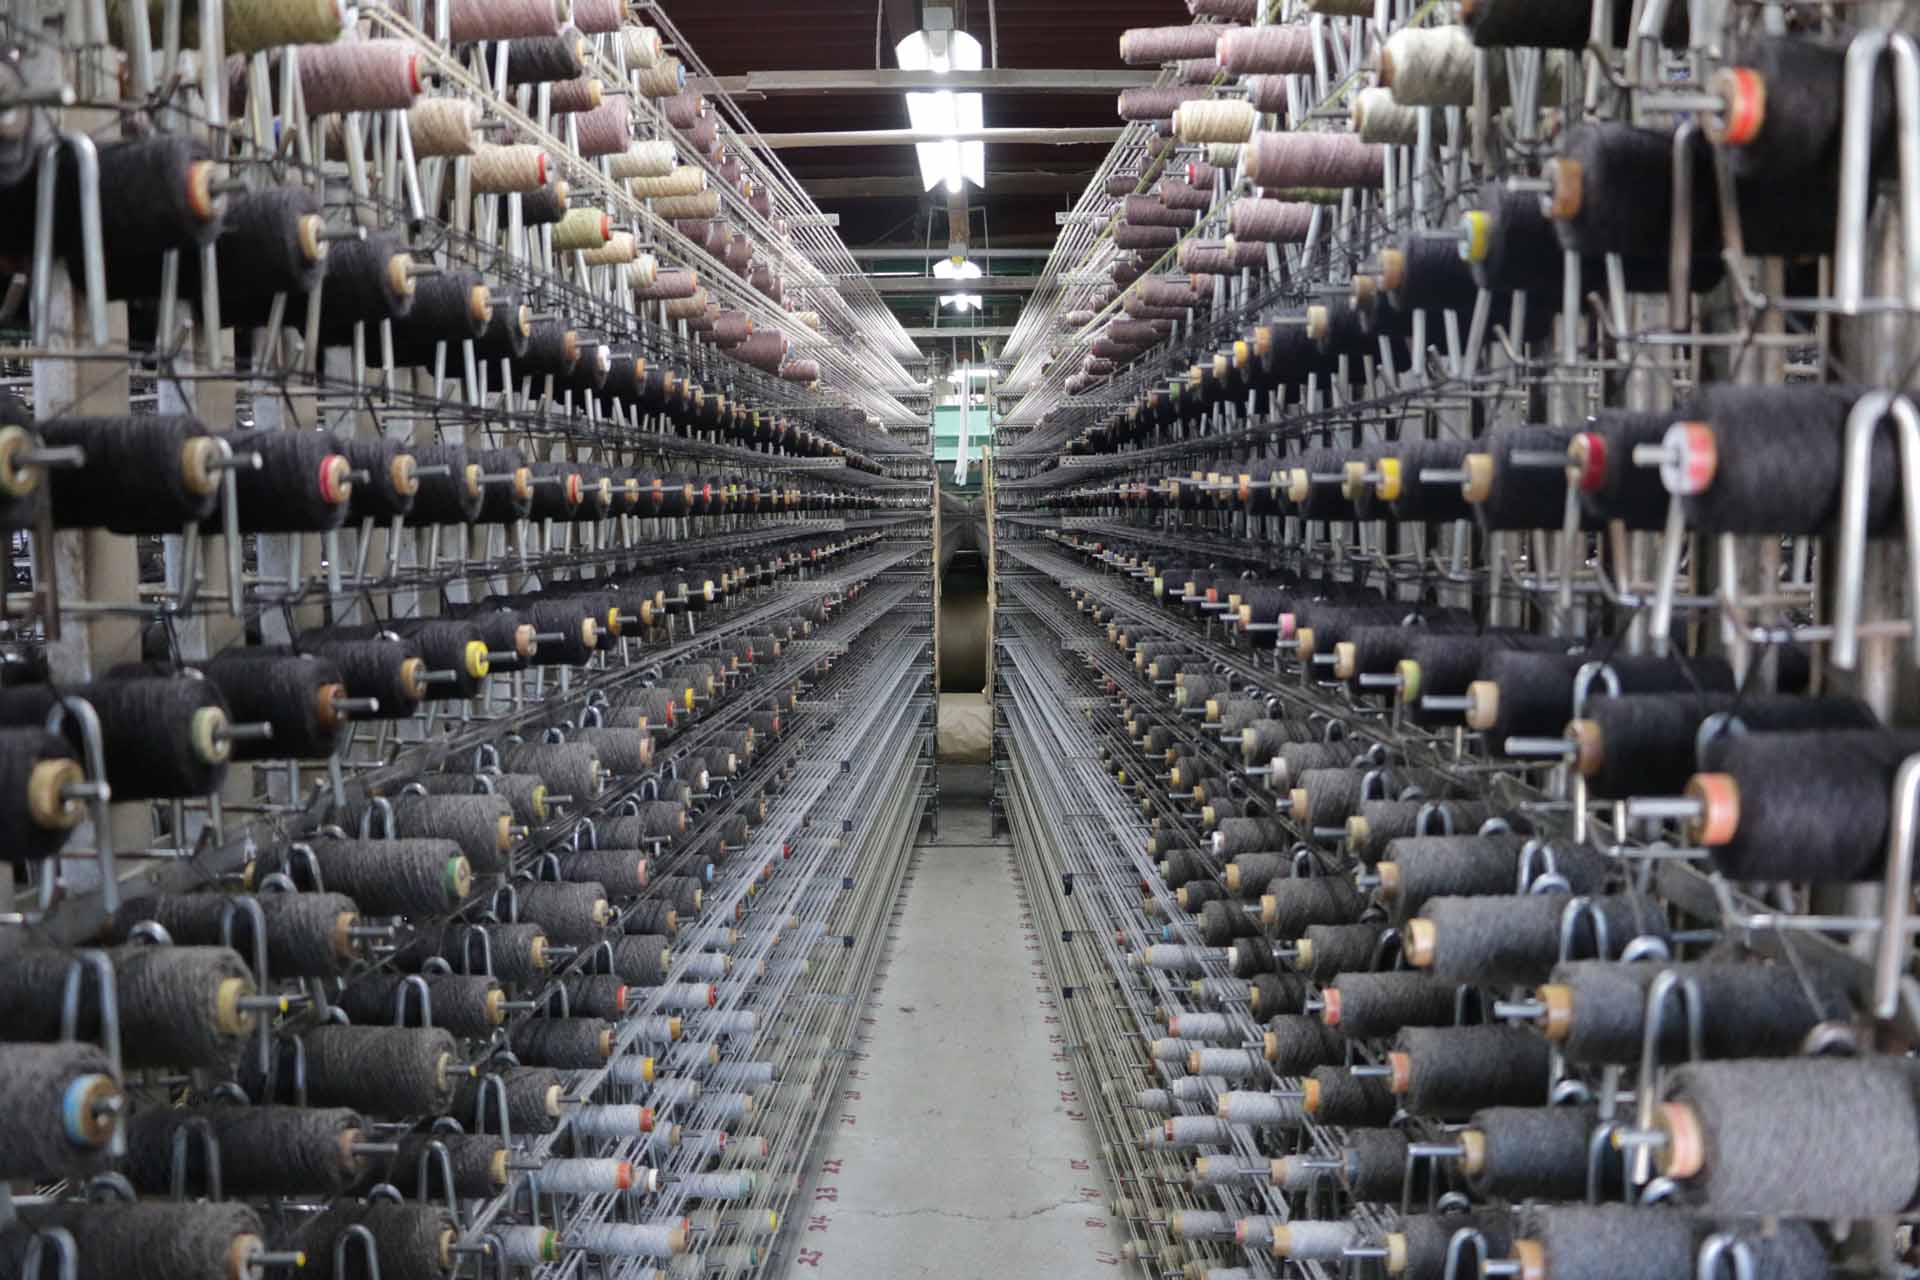 ご自宅と一緒に見せていただいた「堀田カーペット」の製造現場。一度に何百という糸巻きから、奥の織機へ糸が送られる。いいカーペットは糸使いが鍵、と堀田さん